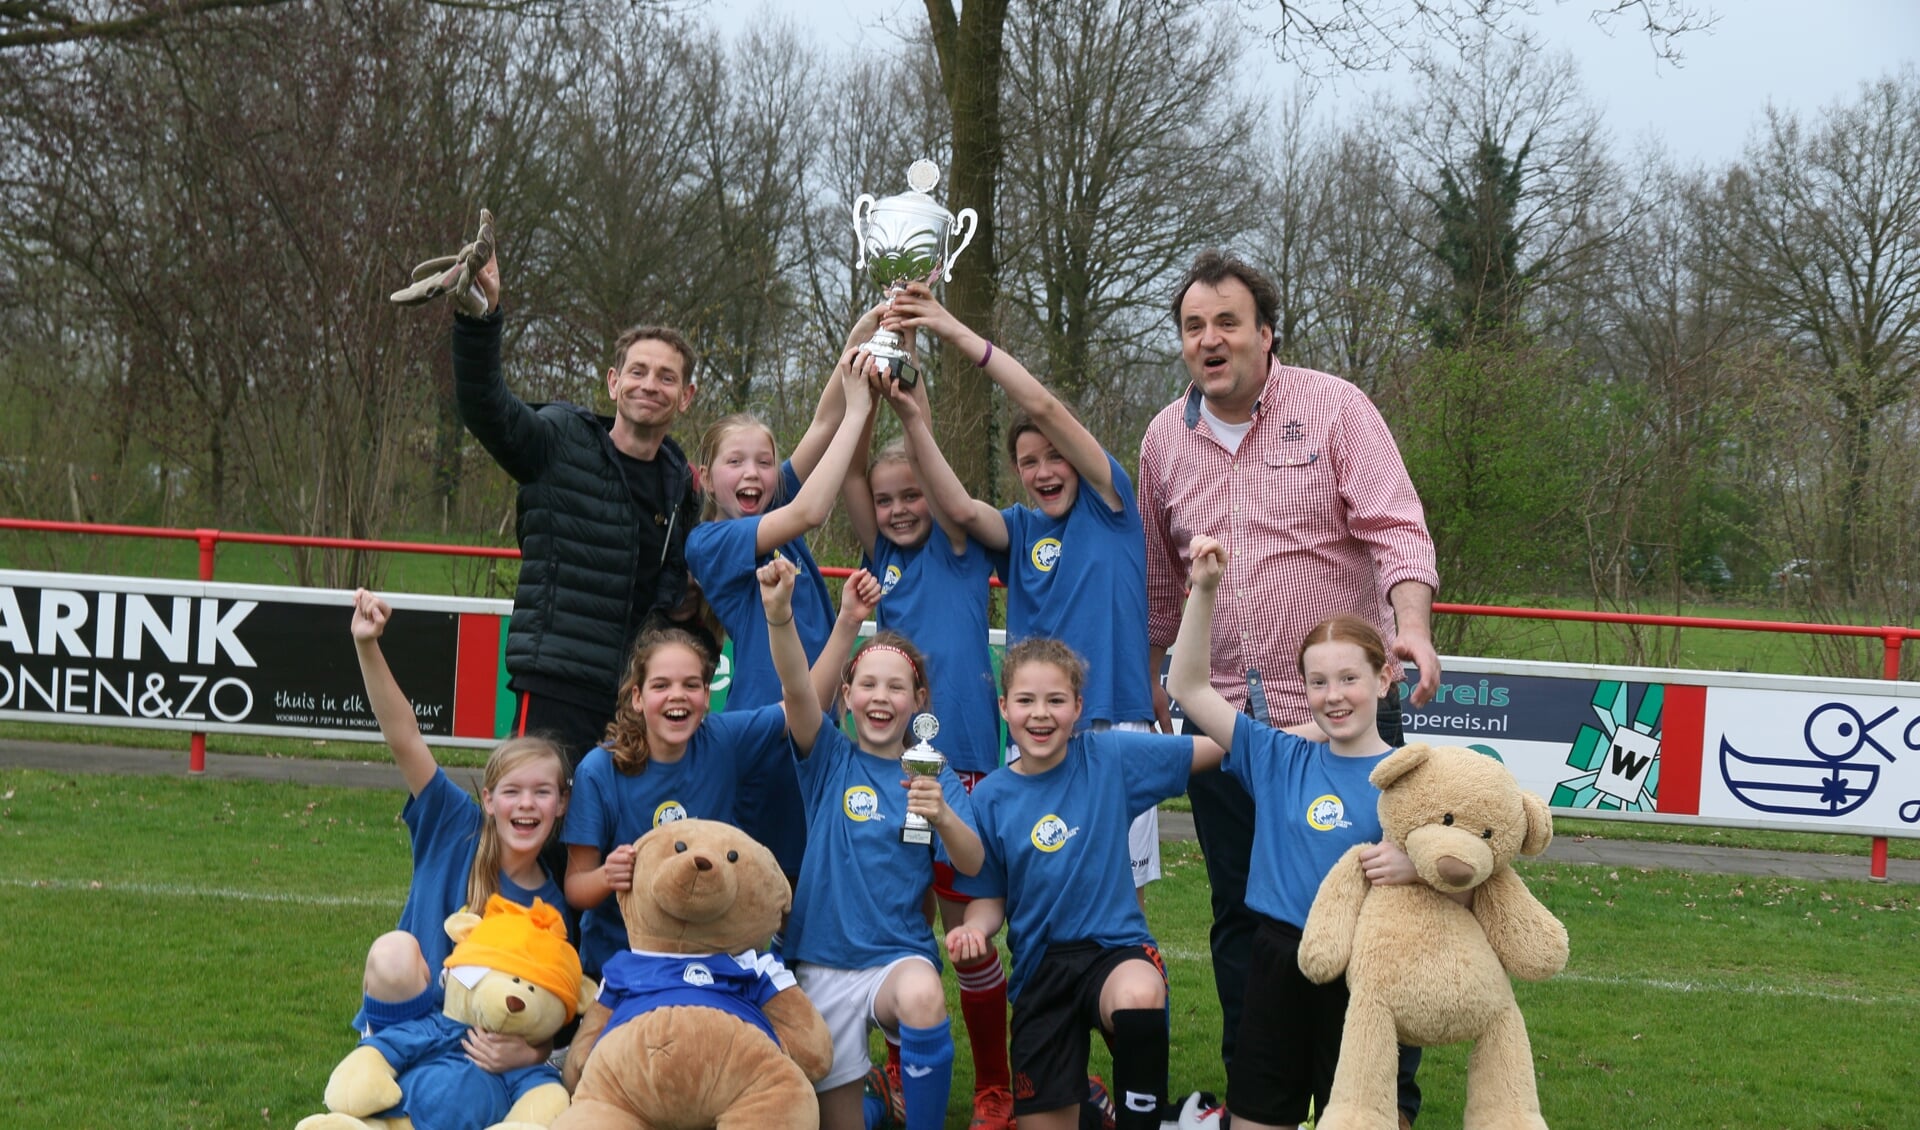 Het meisjesteam van de St. Jorisschool, dat kampioen werd. foto: PR